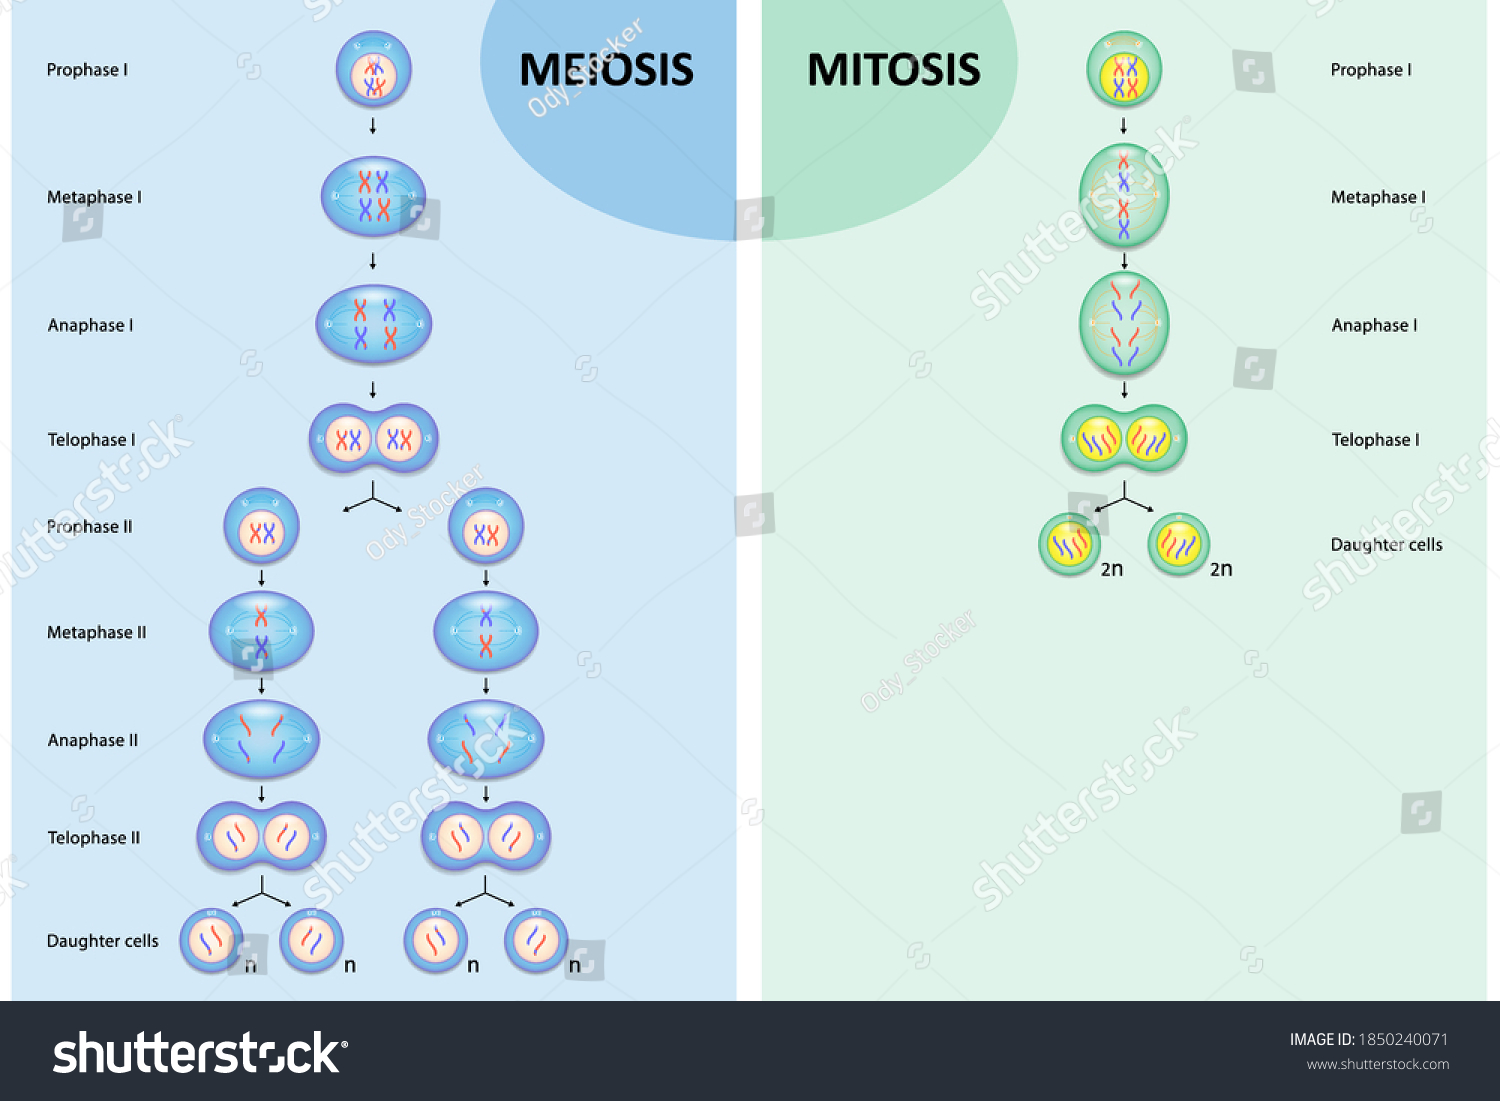 1049 Imágenes De Mitosis Y Meiosis Imágenes Fotos Y Vectores De Stock Shutterstock 7082